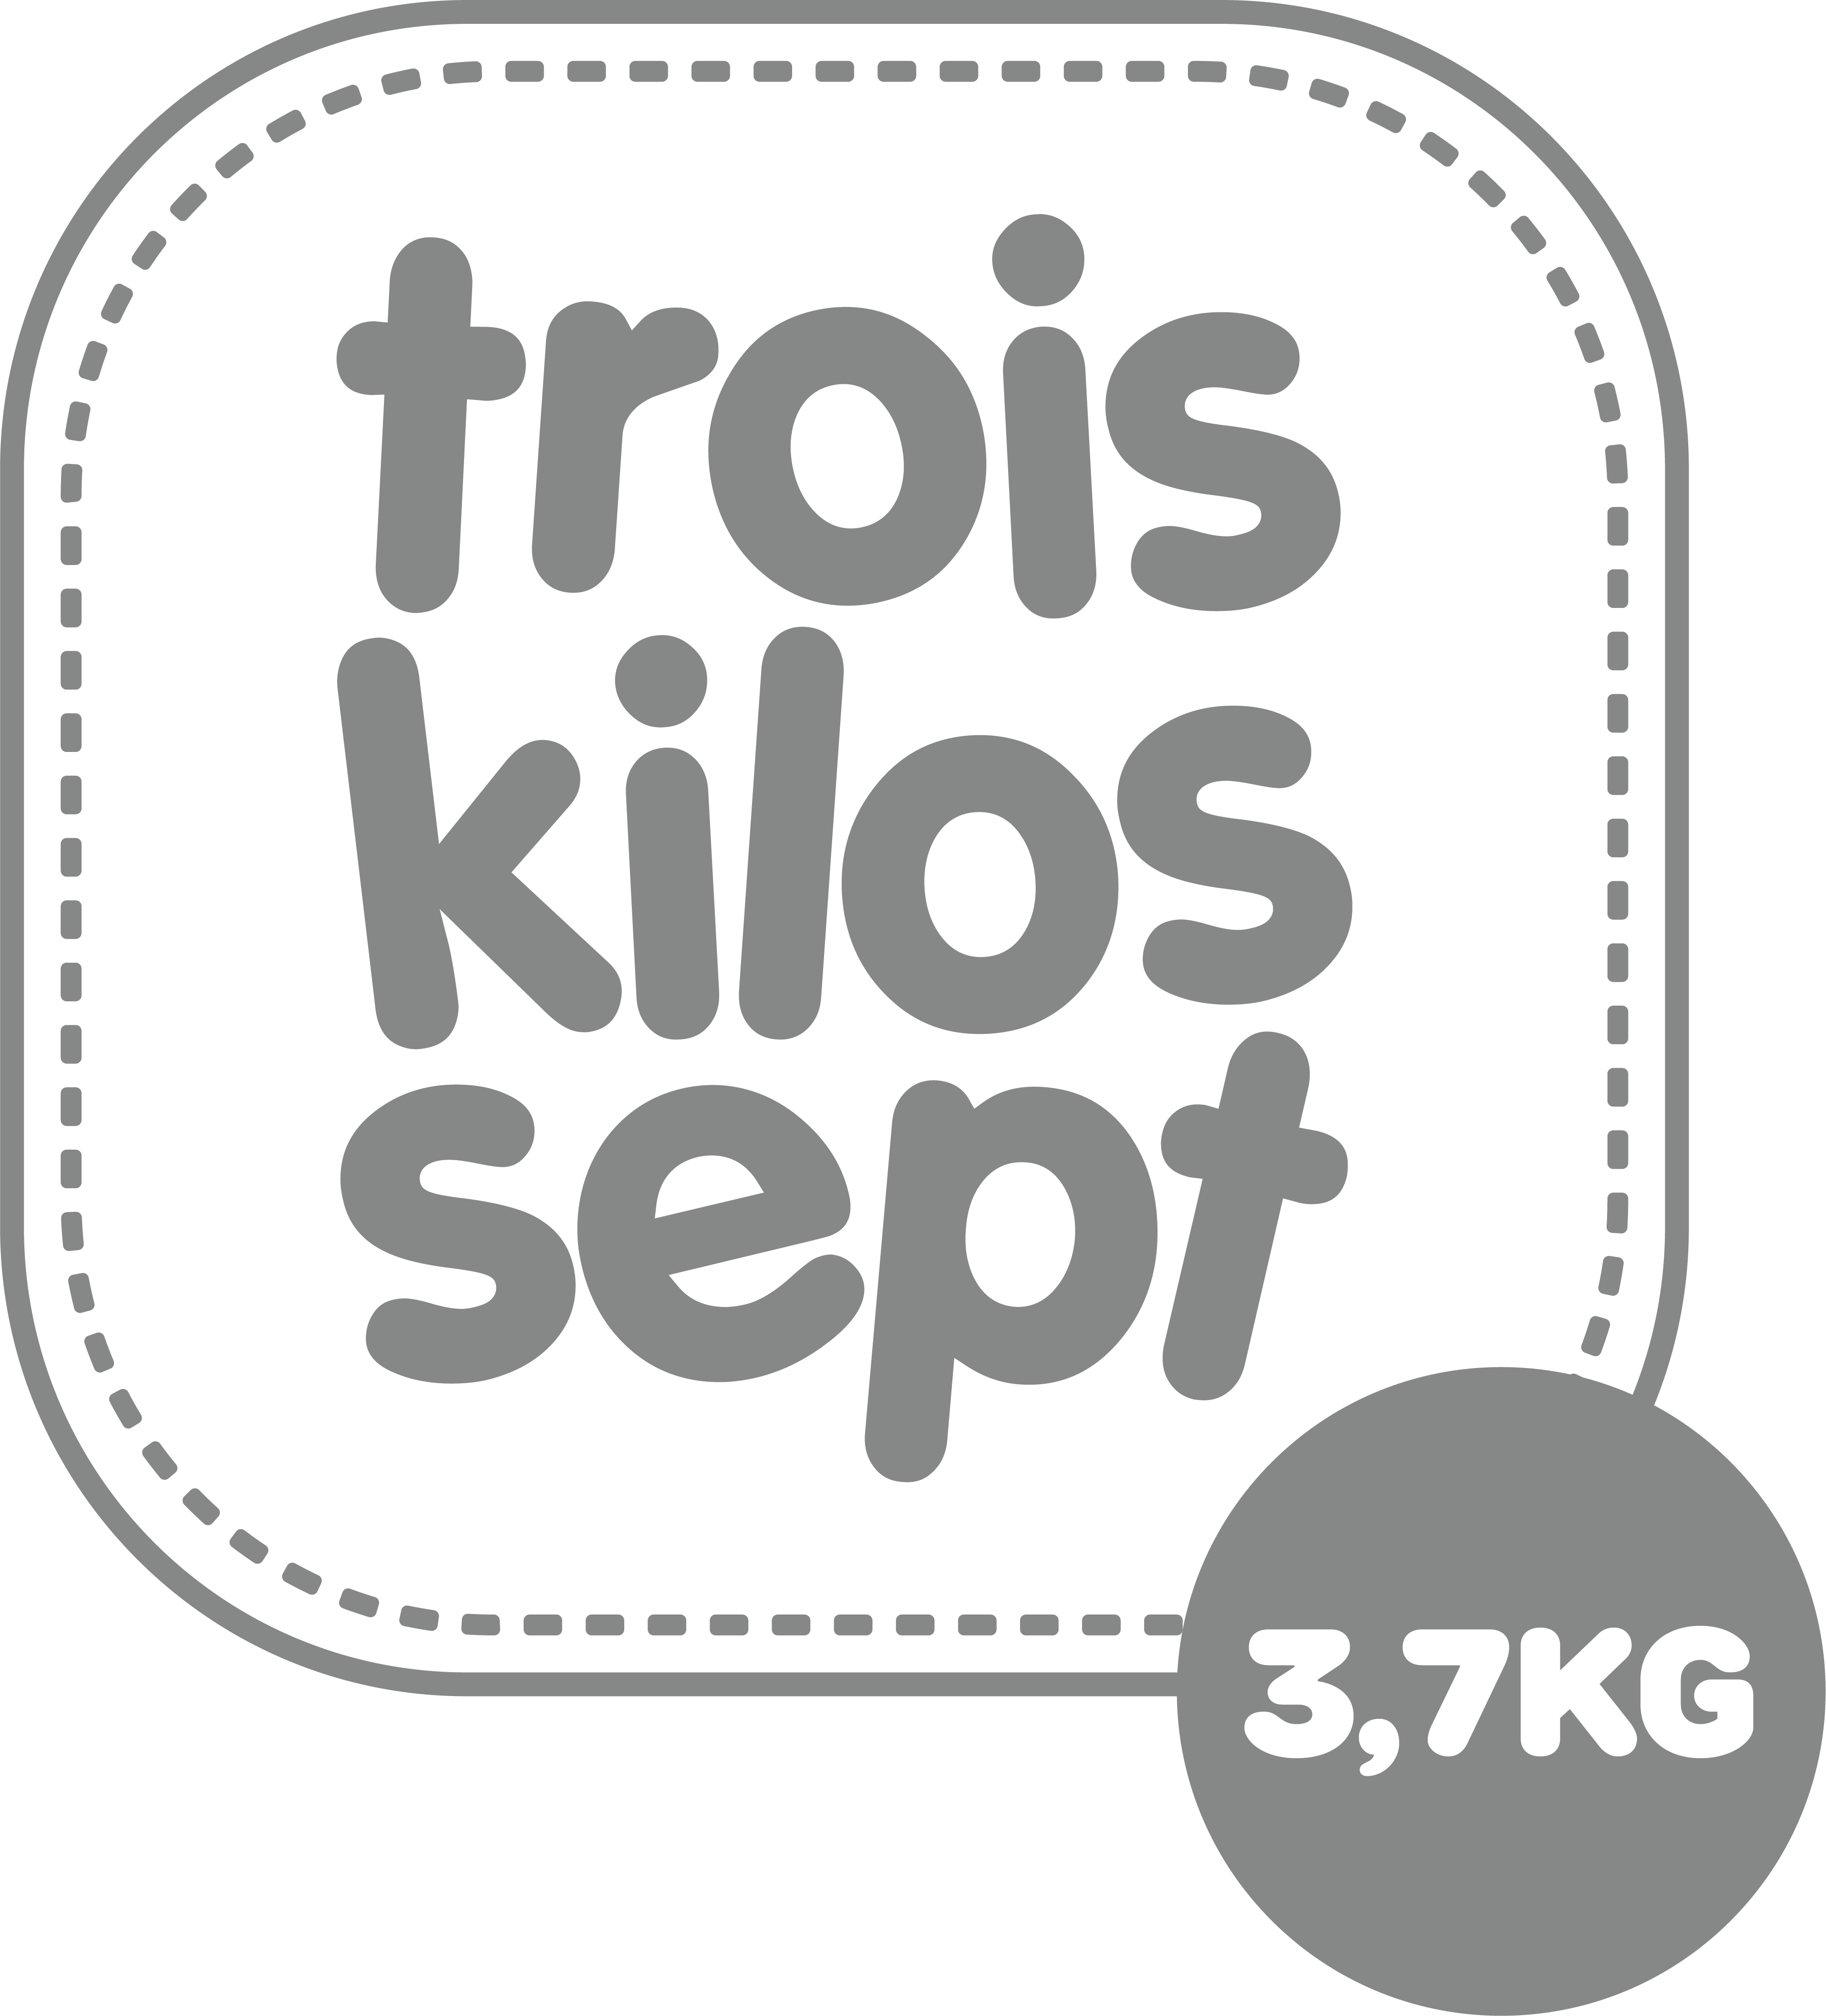 LOT DE 3 LANGES 70X70CM, Trois Kilos Sept de Trois Kilos Sept